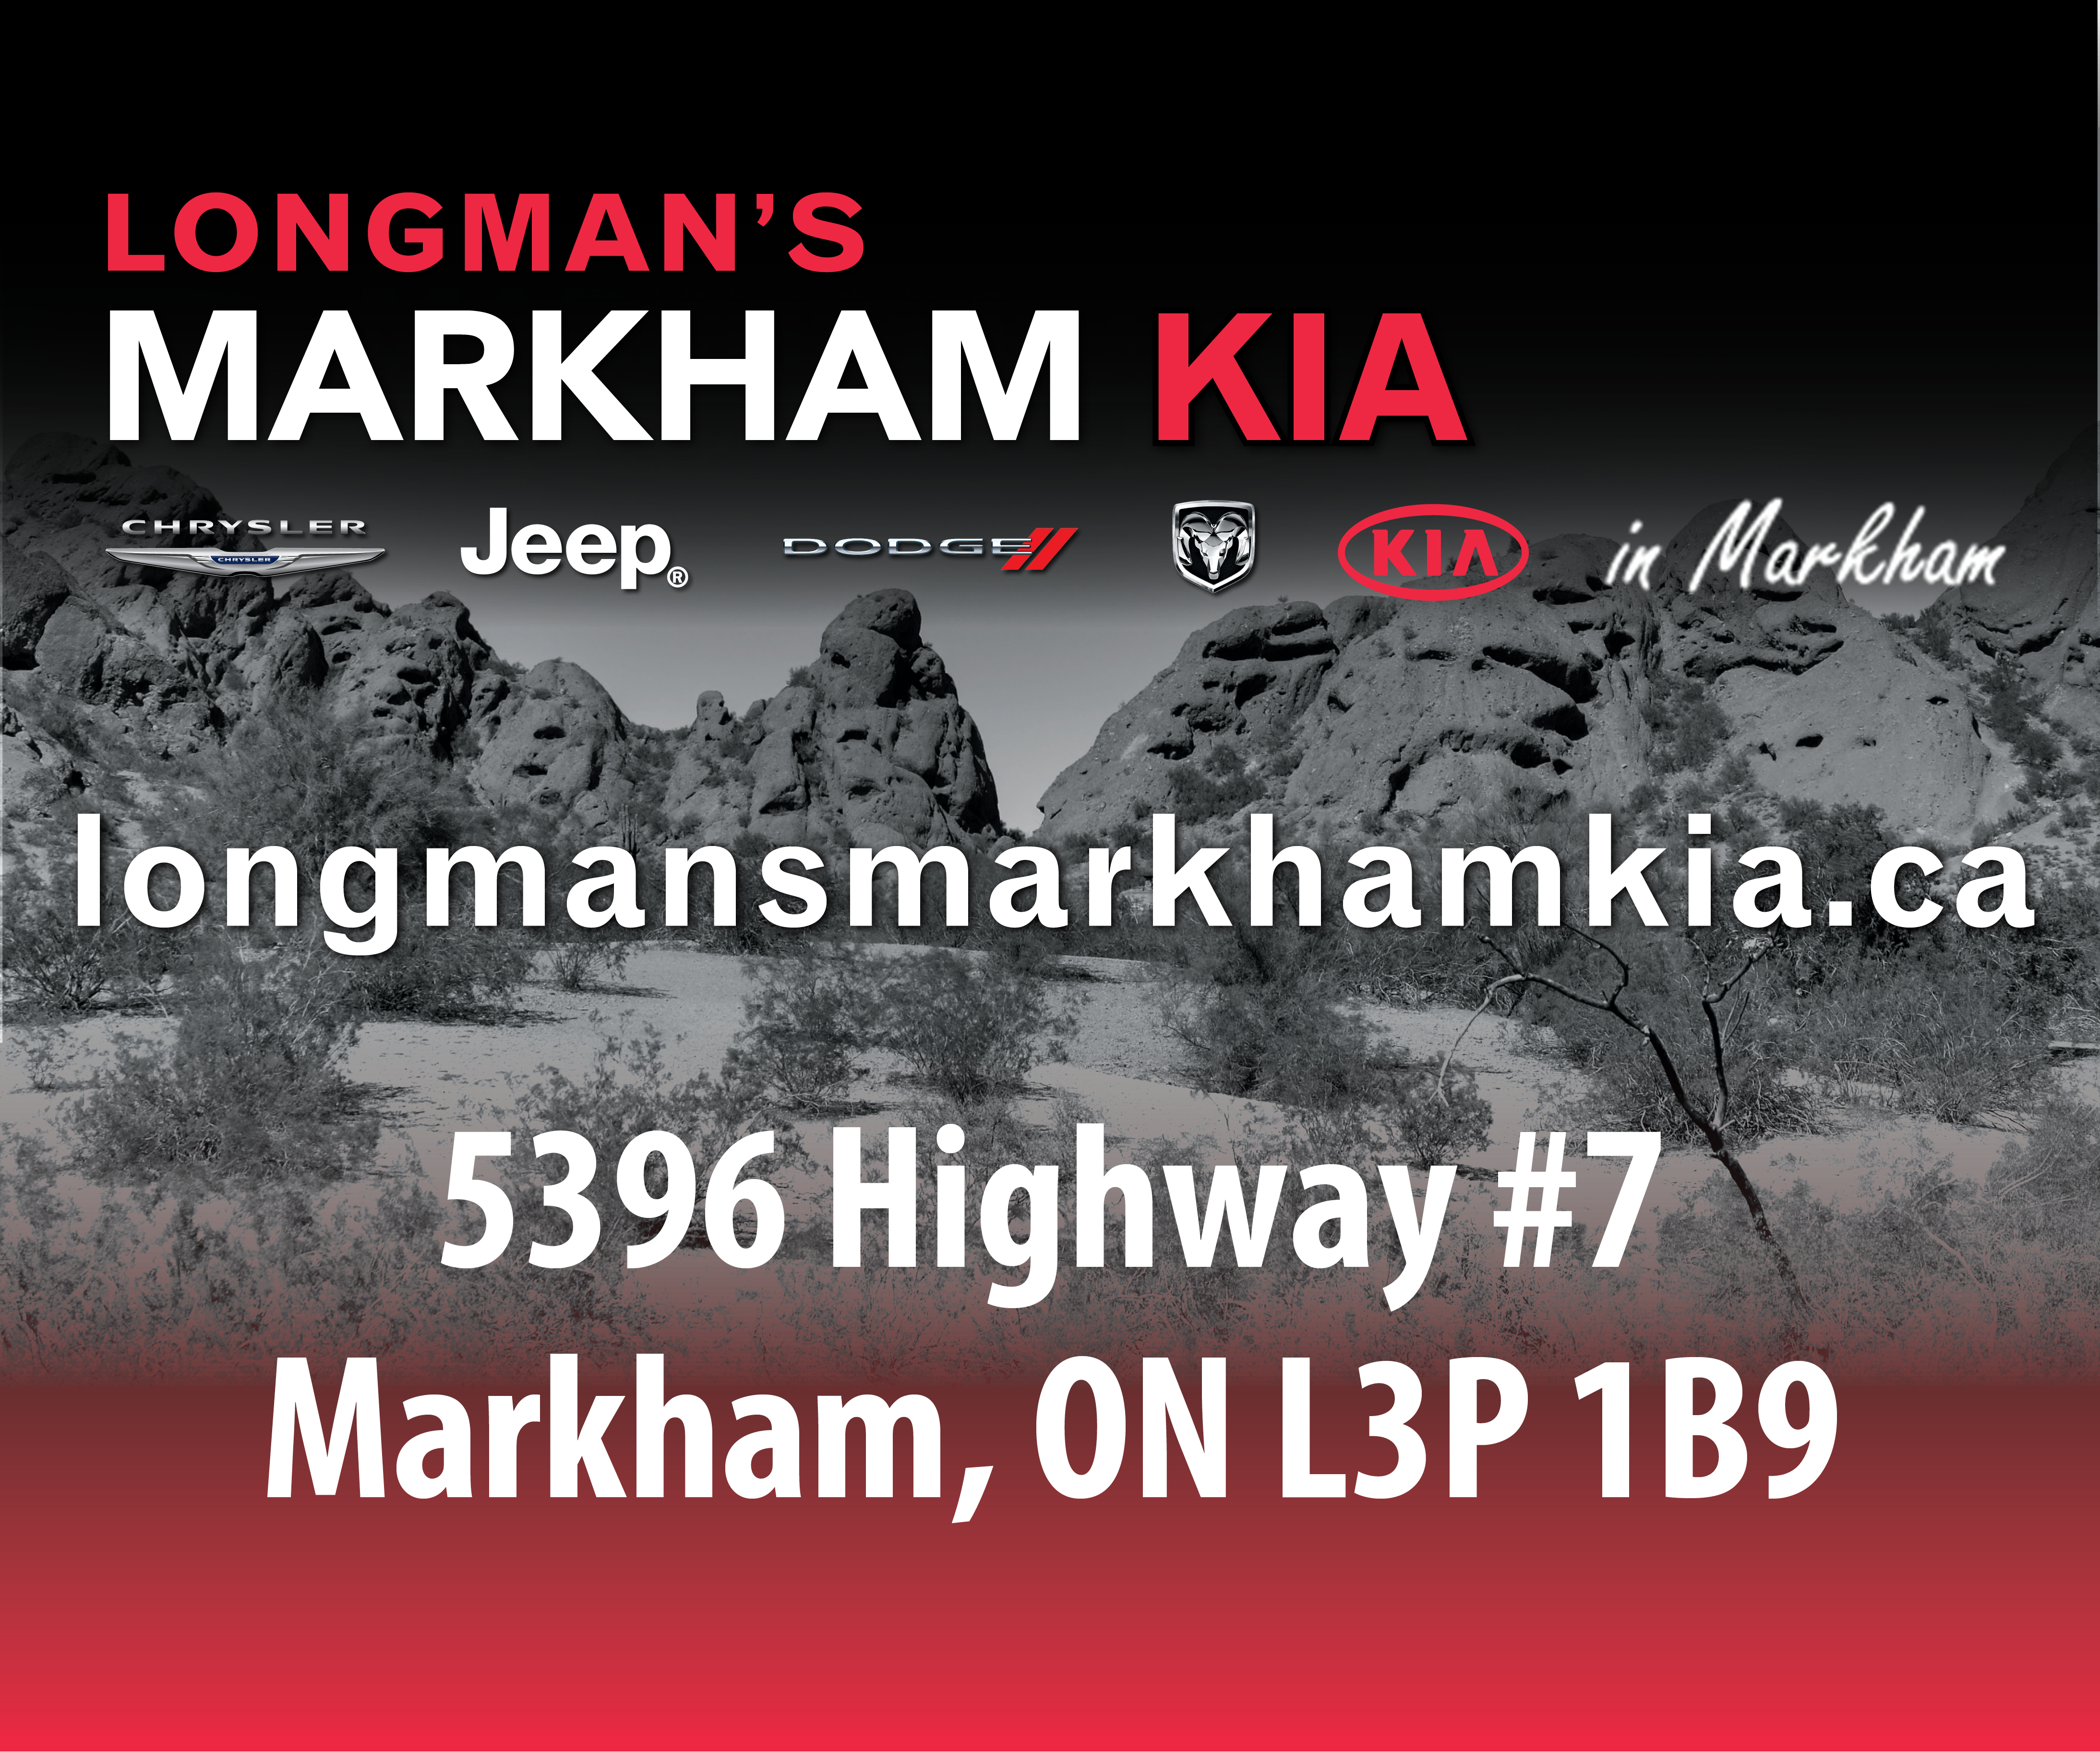 More from Longman's Markham Kia